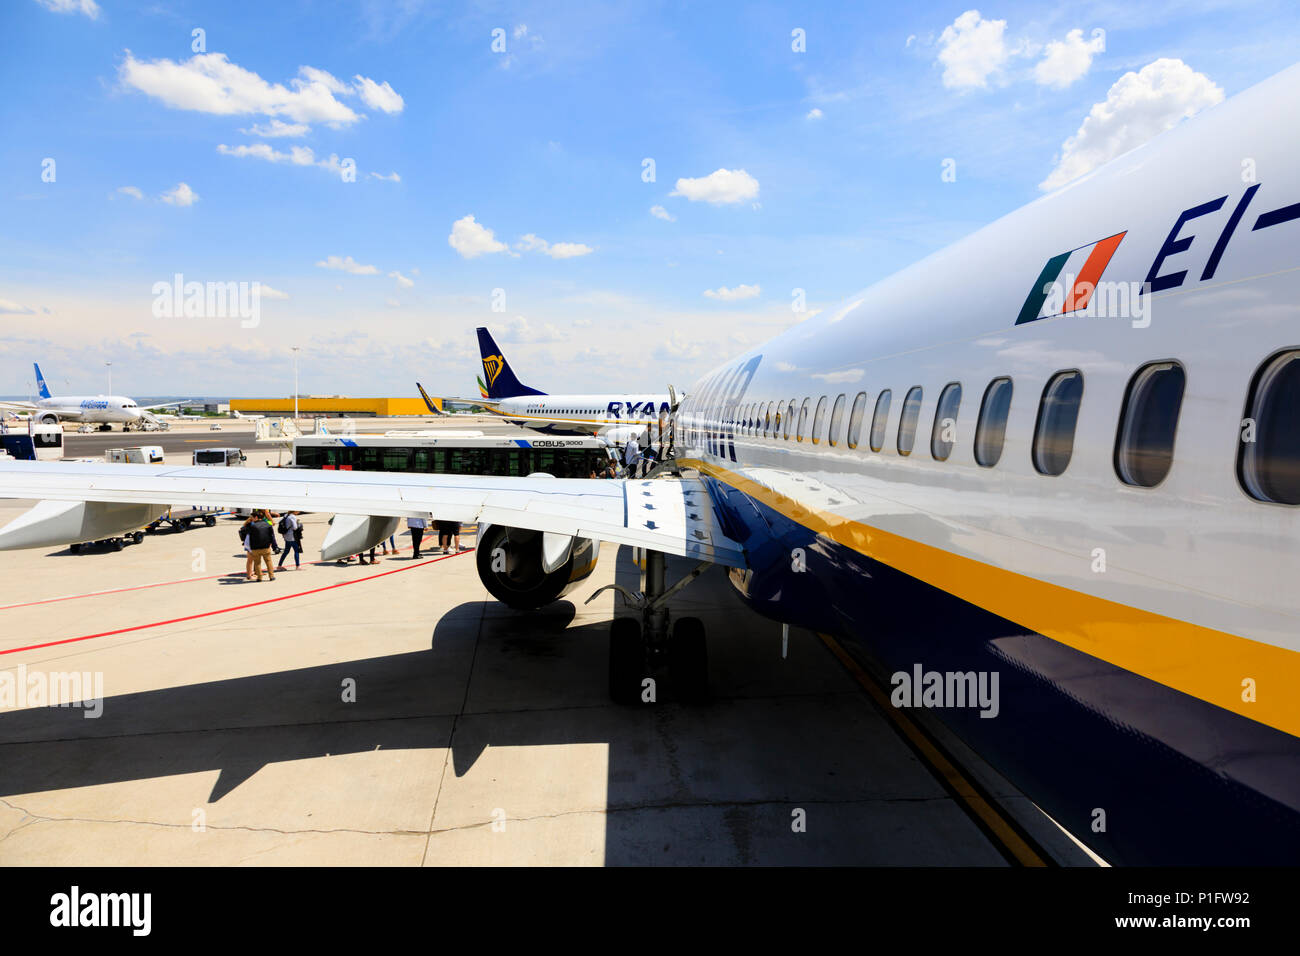 Ryanair Boeing 737-800 aircraft, Adolfo Suarez Barajas airport, Aeropuerto, Madrid, Spain. May 2018 Stock Photo